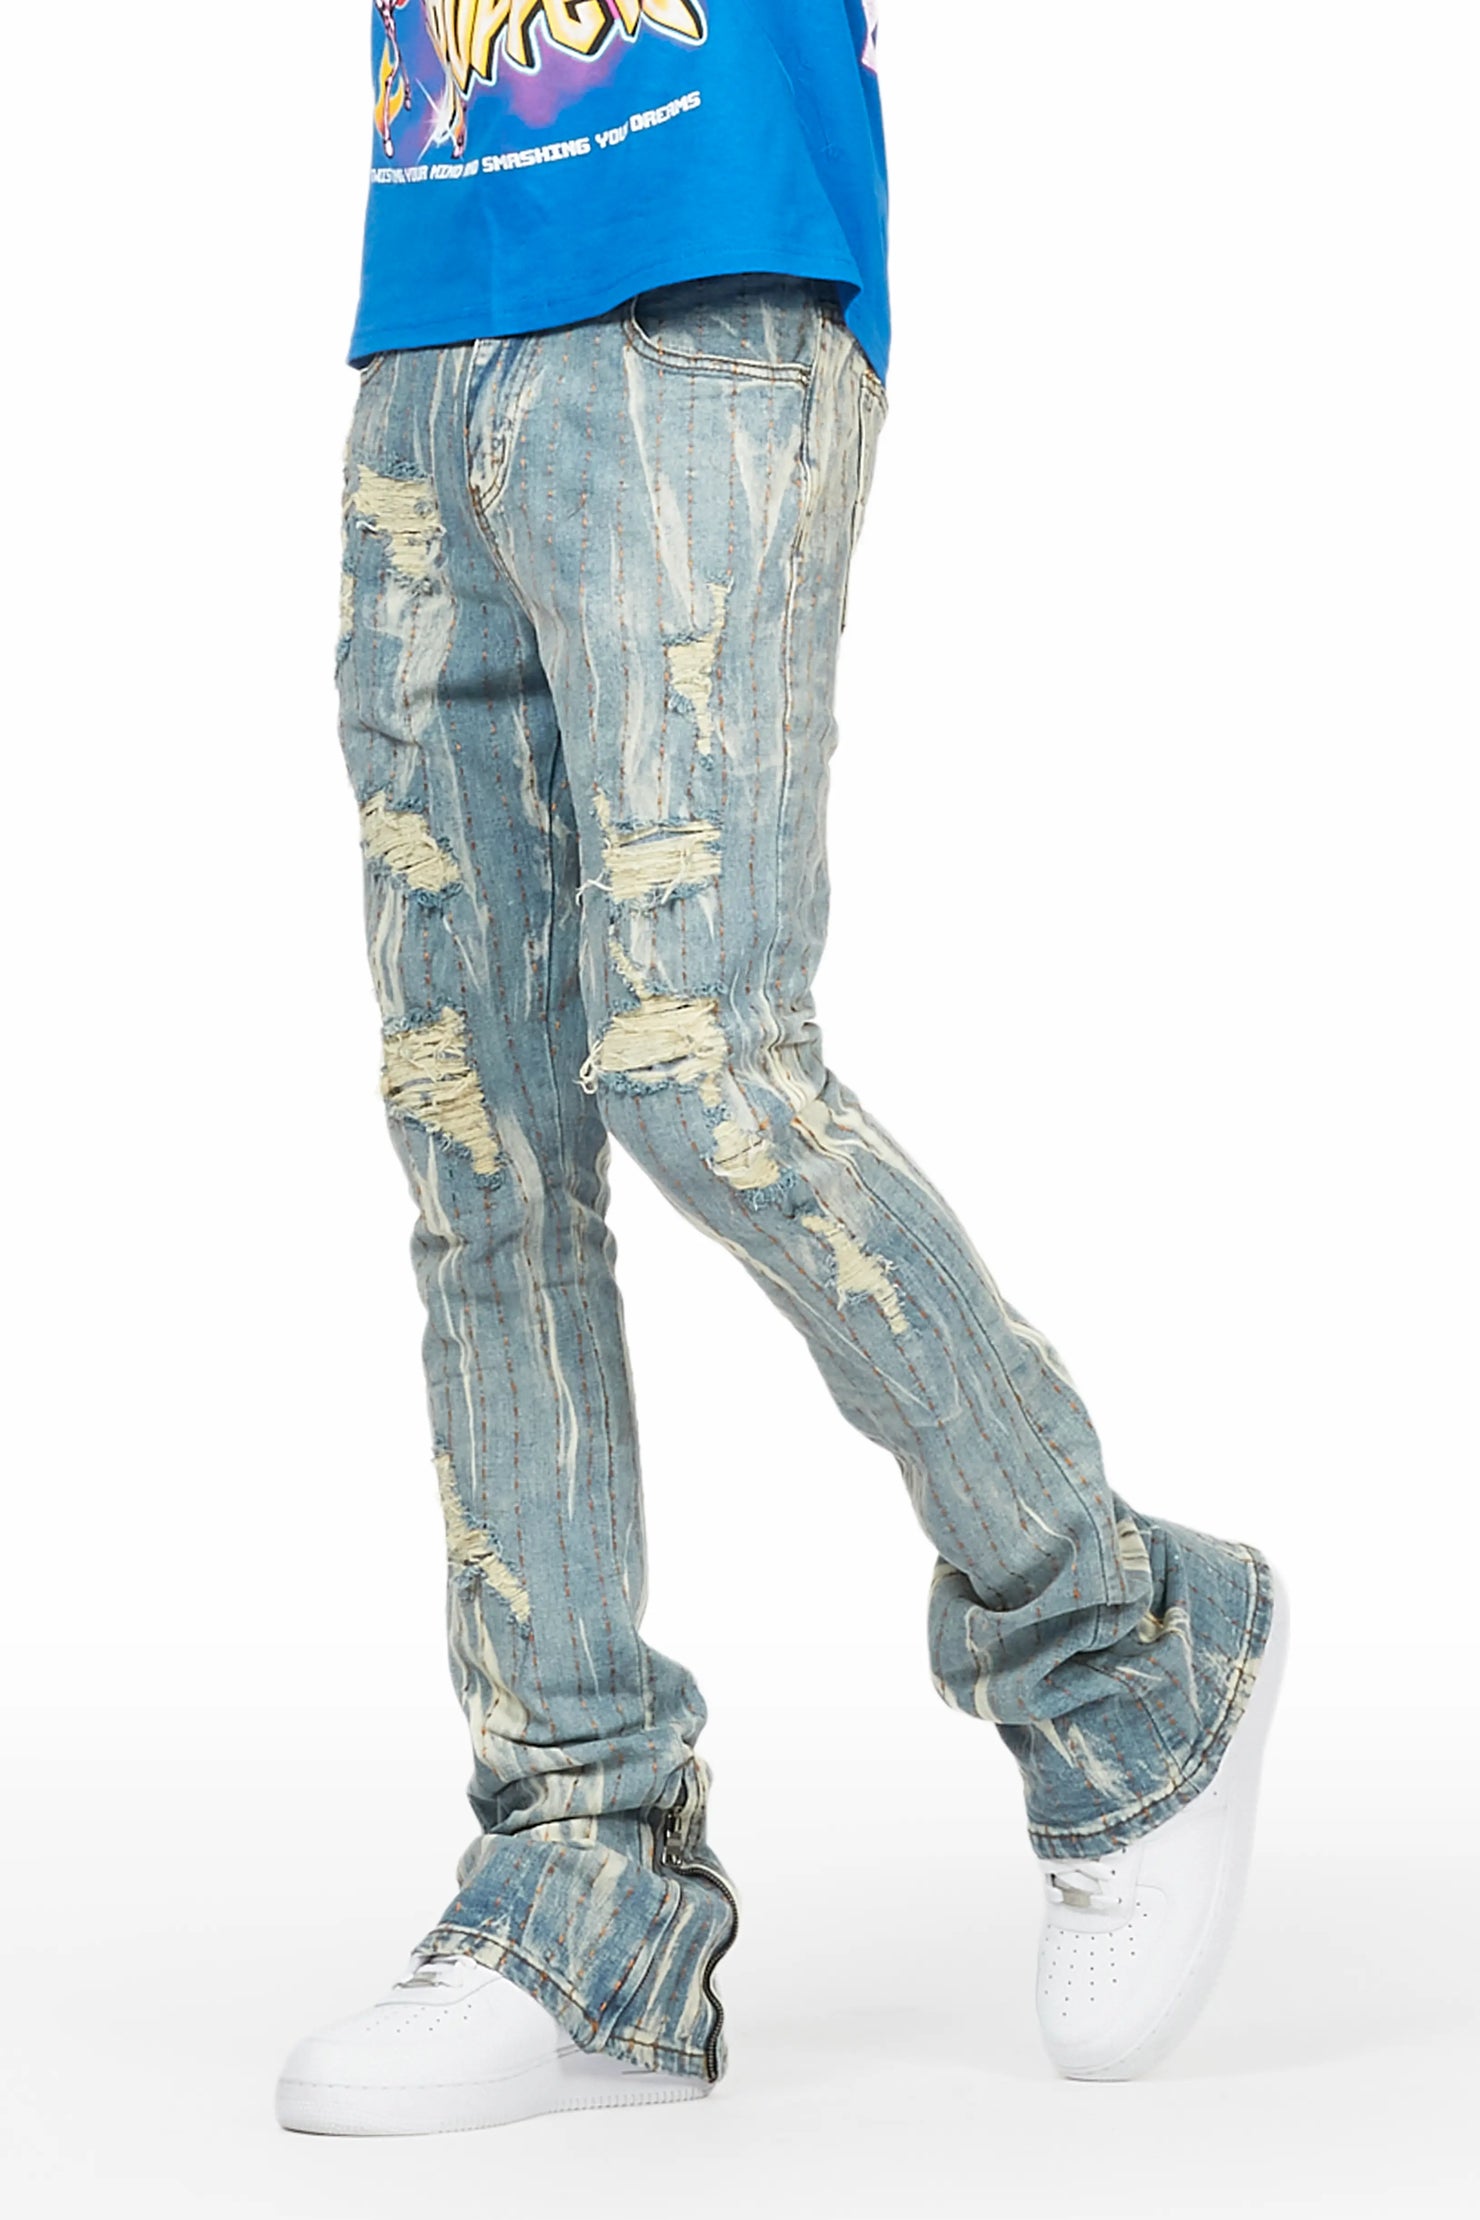 Damir Vintage Blue Stacked Flare Jean